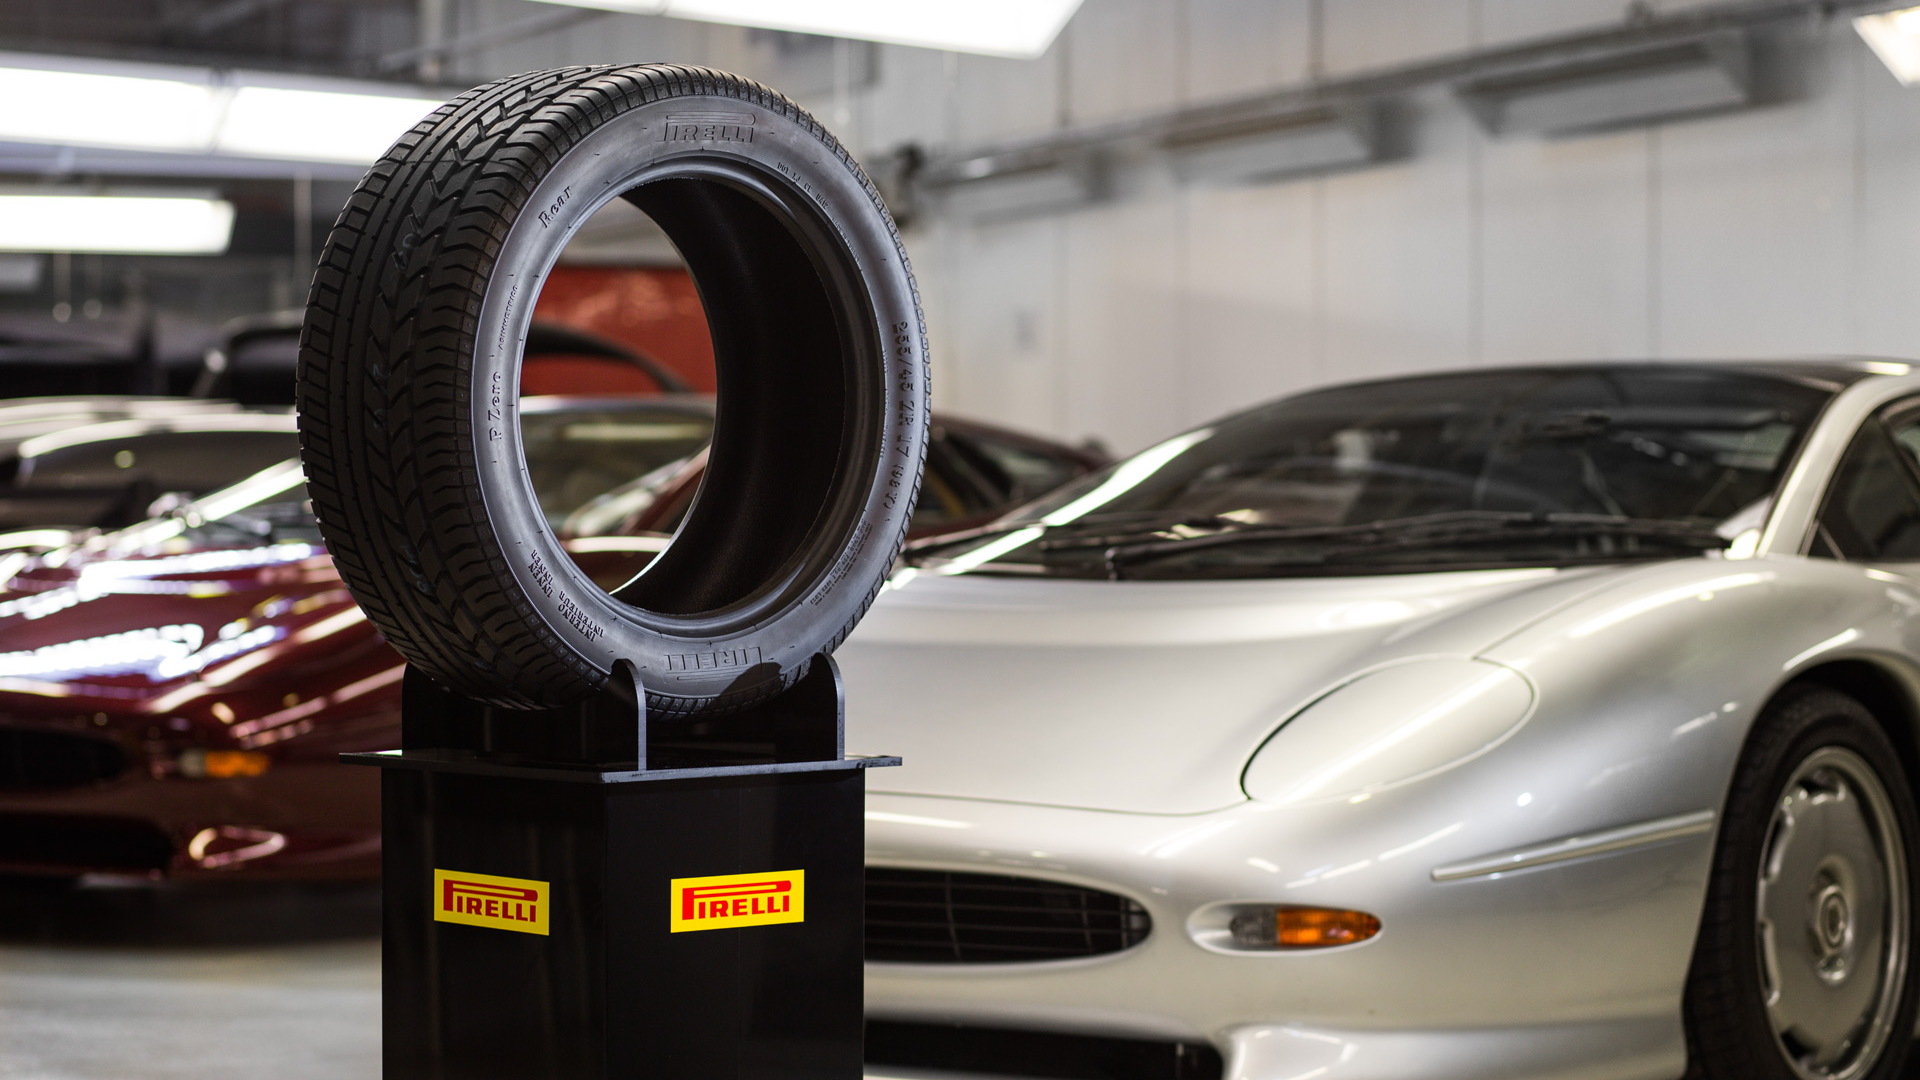 New Pirelli tire for the Jaguar XJ220